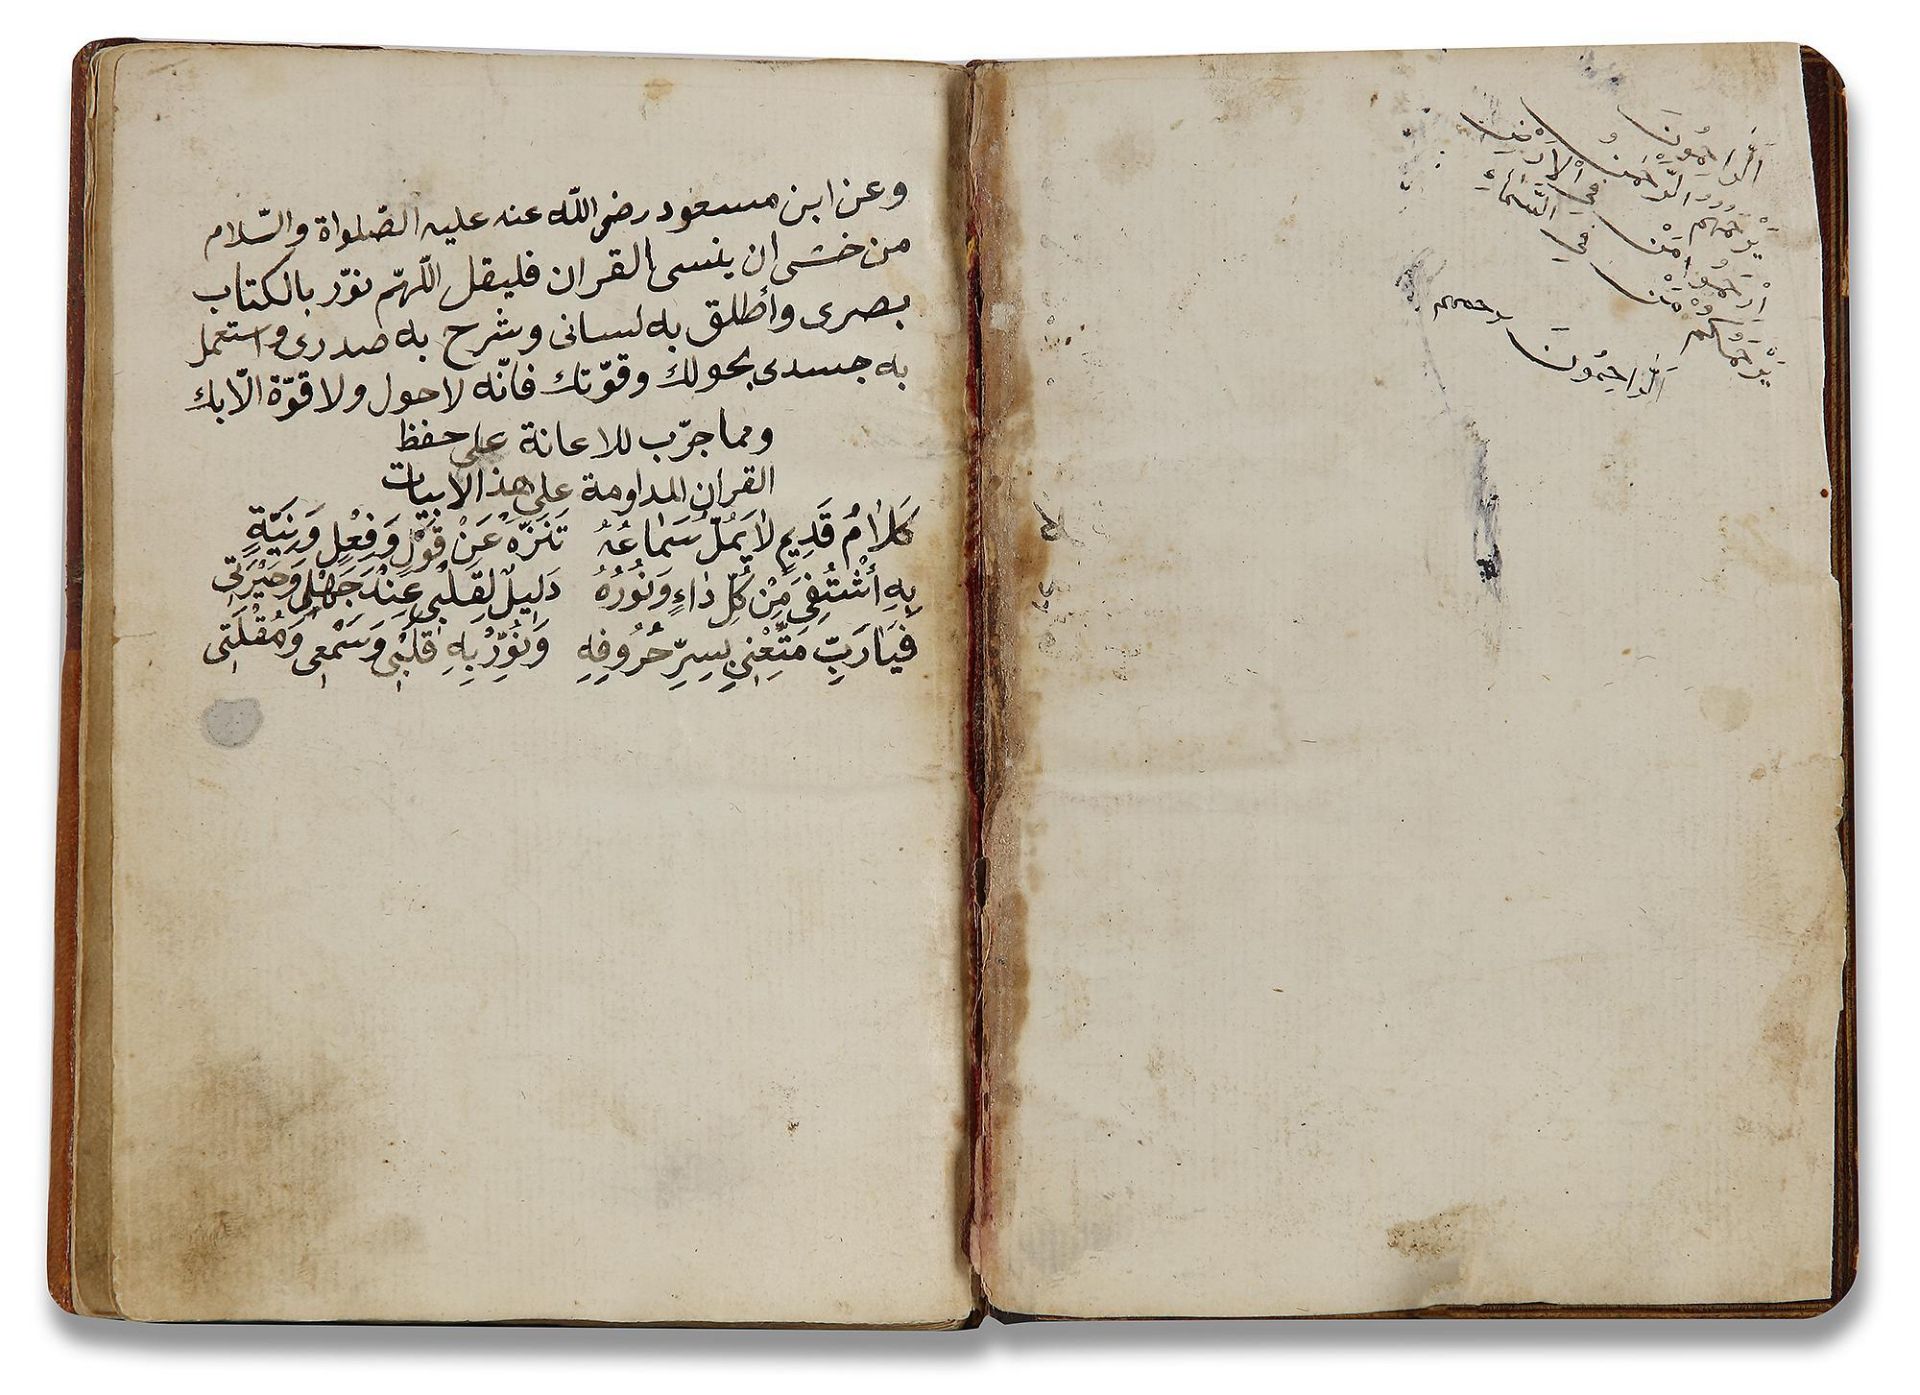 AN OTTOMAN MANUSCRIPT COPIED BY YUSUF IBN ABD AL-WAHHAB 1099 AH/1688 AD - Image 3 of 16